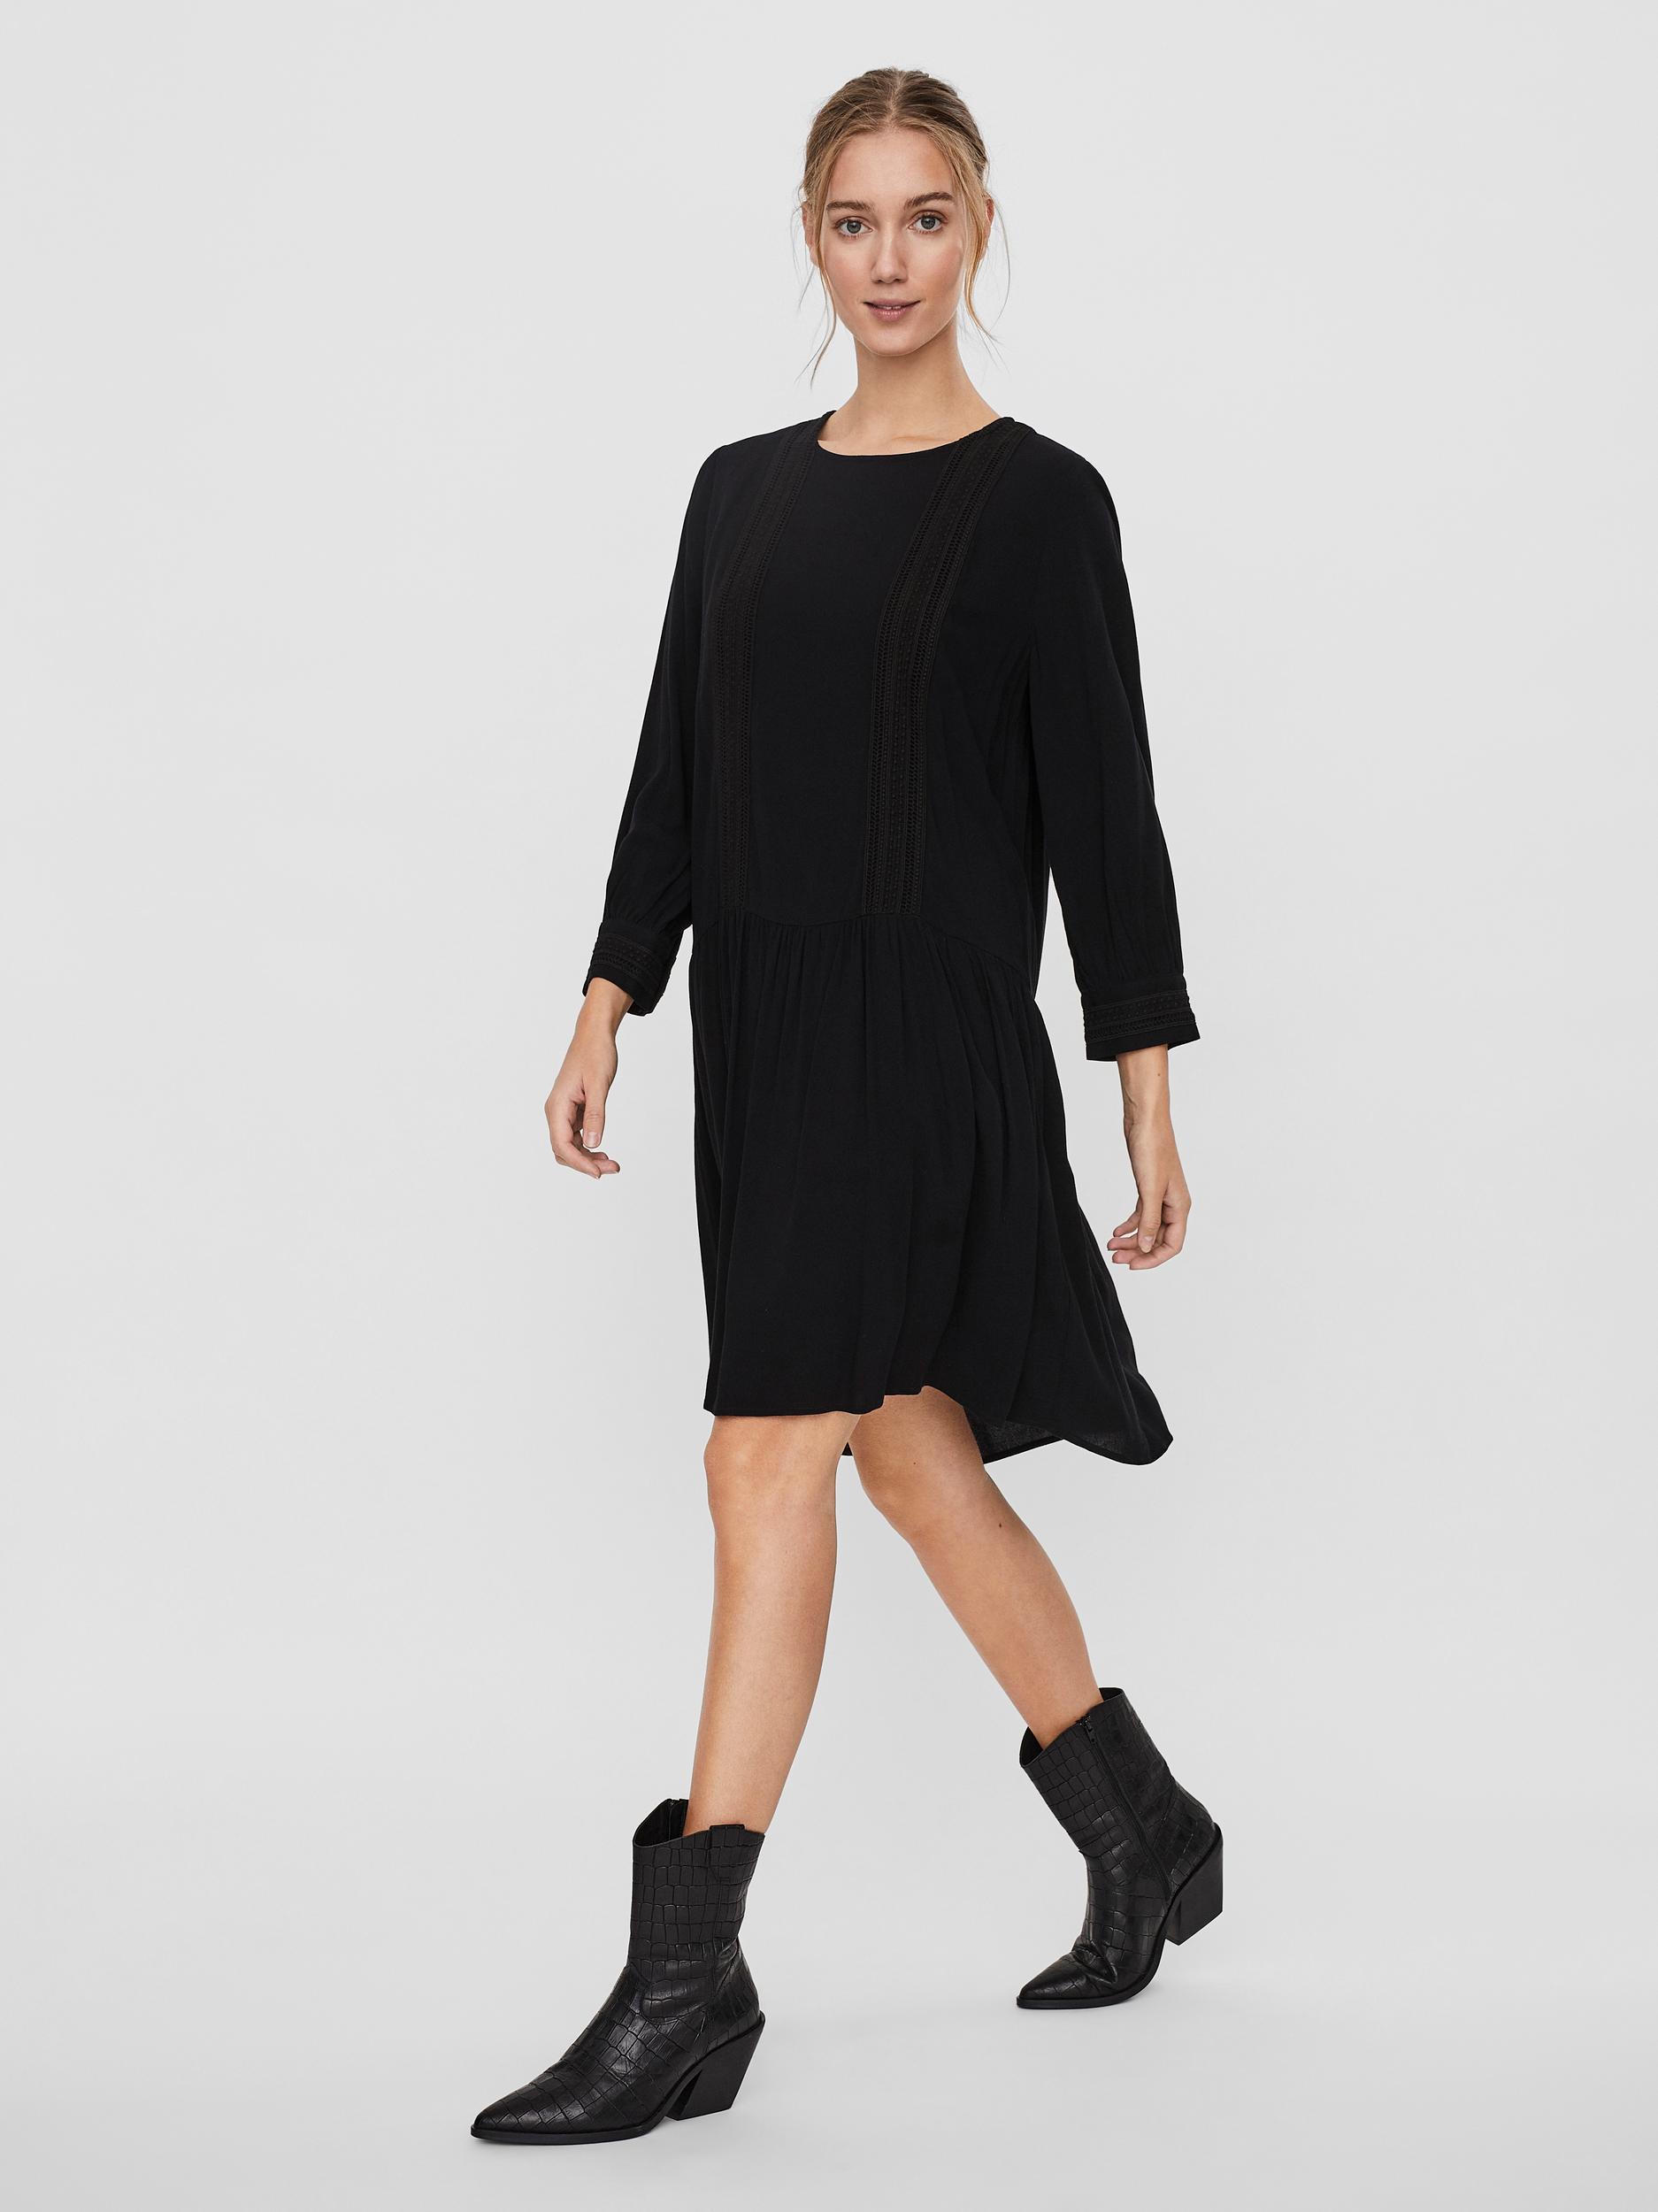 Vero Moda | FINAL SALE - Gidget loose fit mini dress